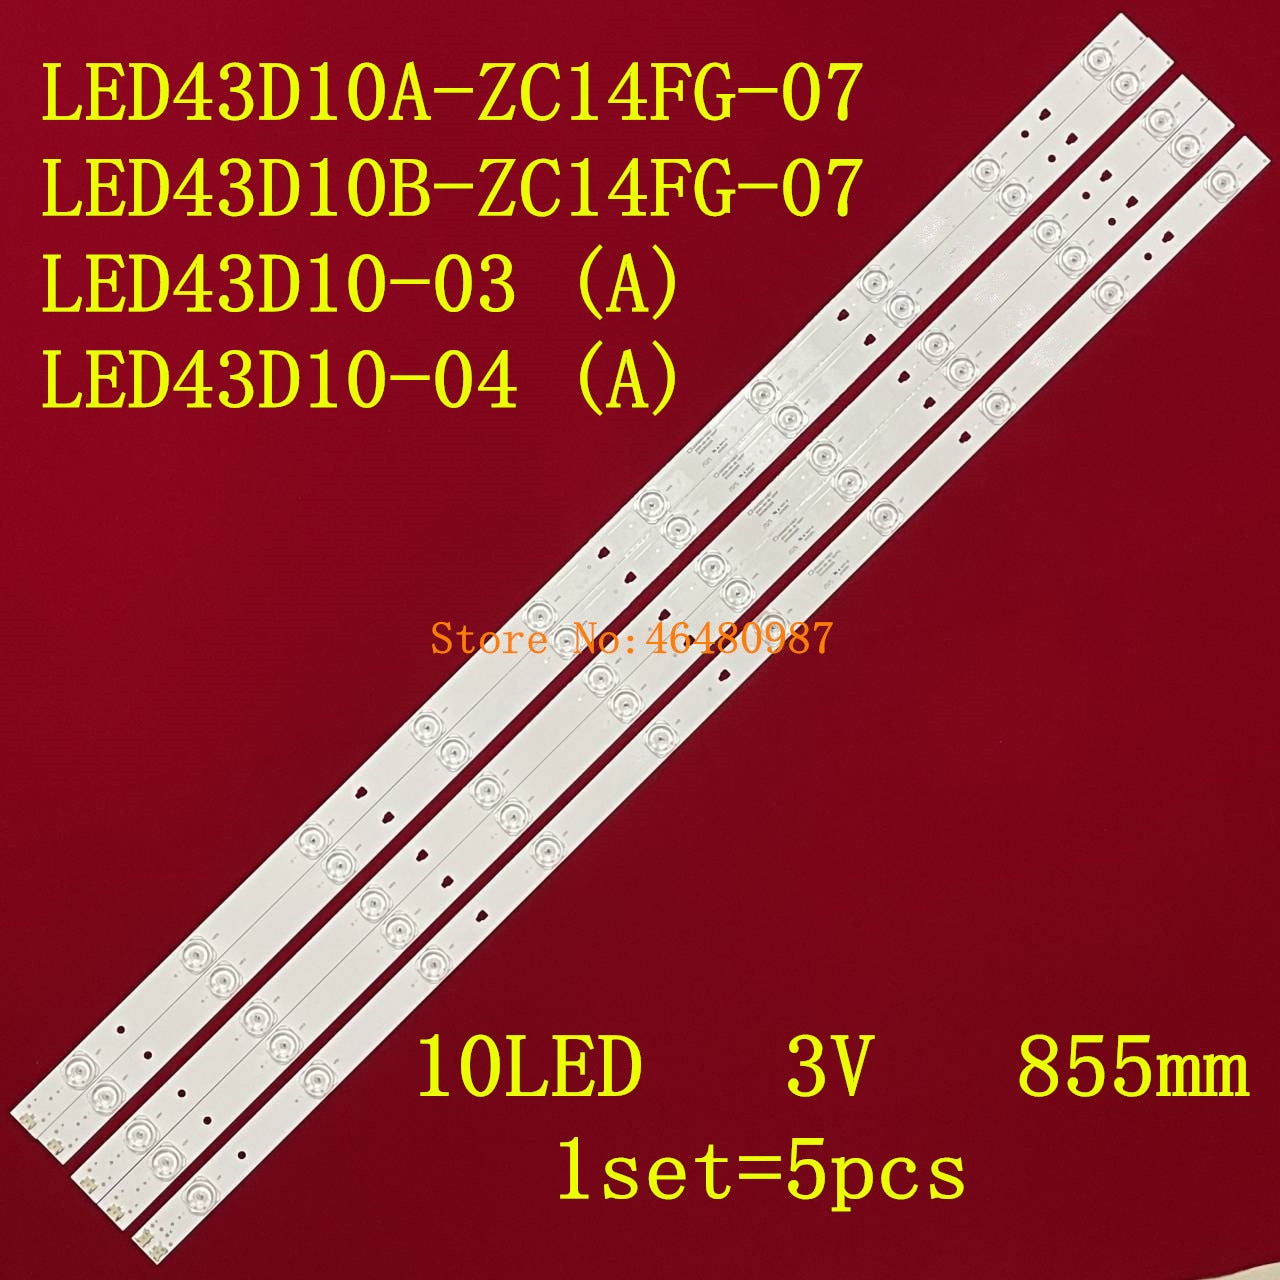 LED43D10A-ZC14FG-07 4pcs + LED43D10B-ZC14FG-07 1pcs..